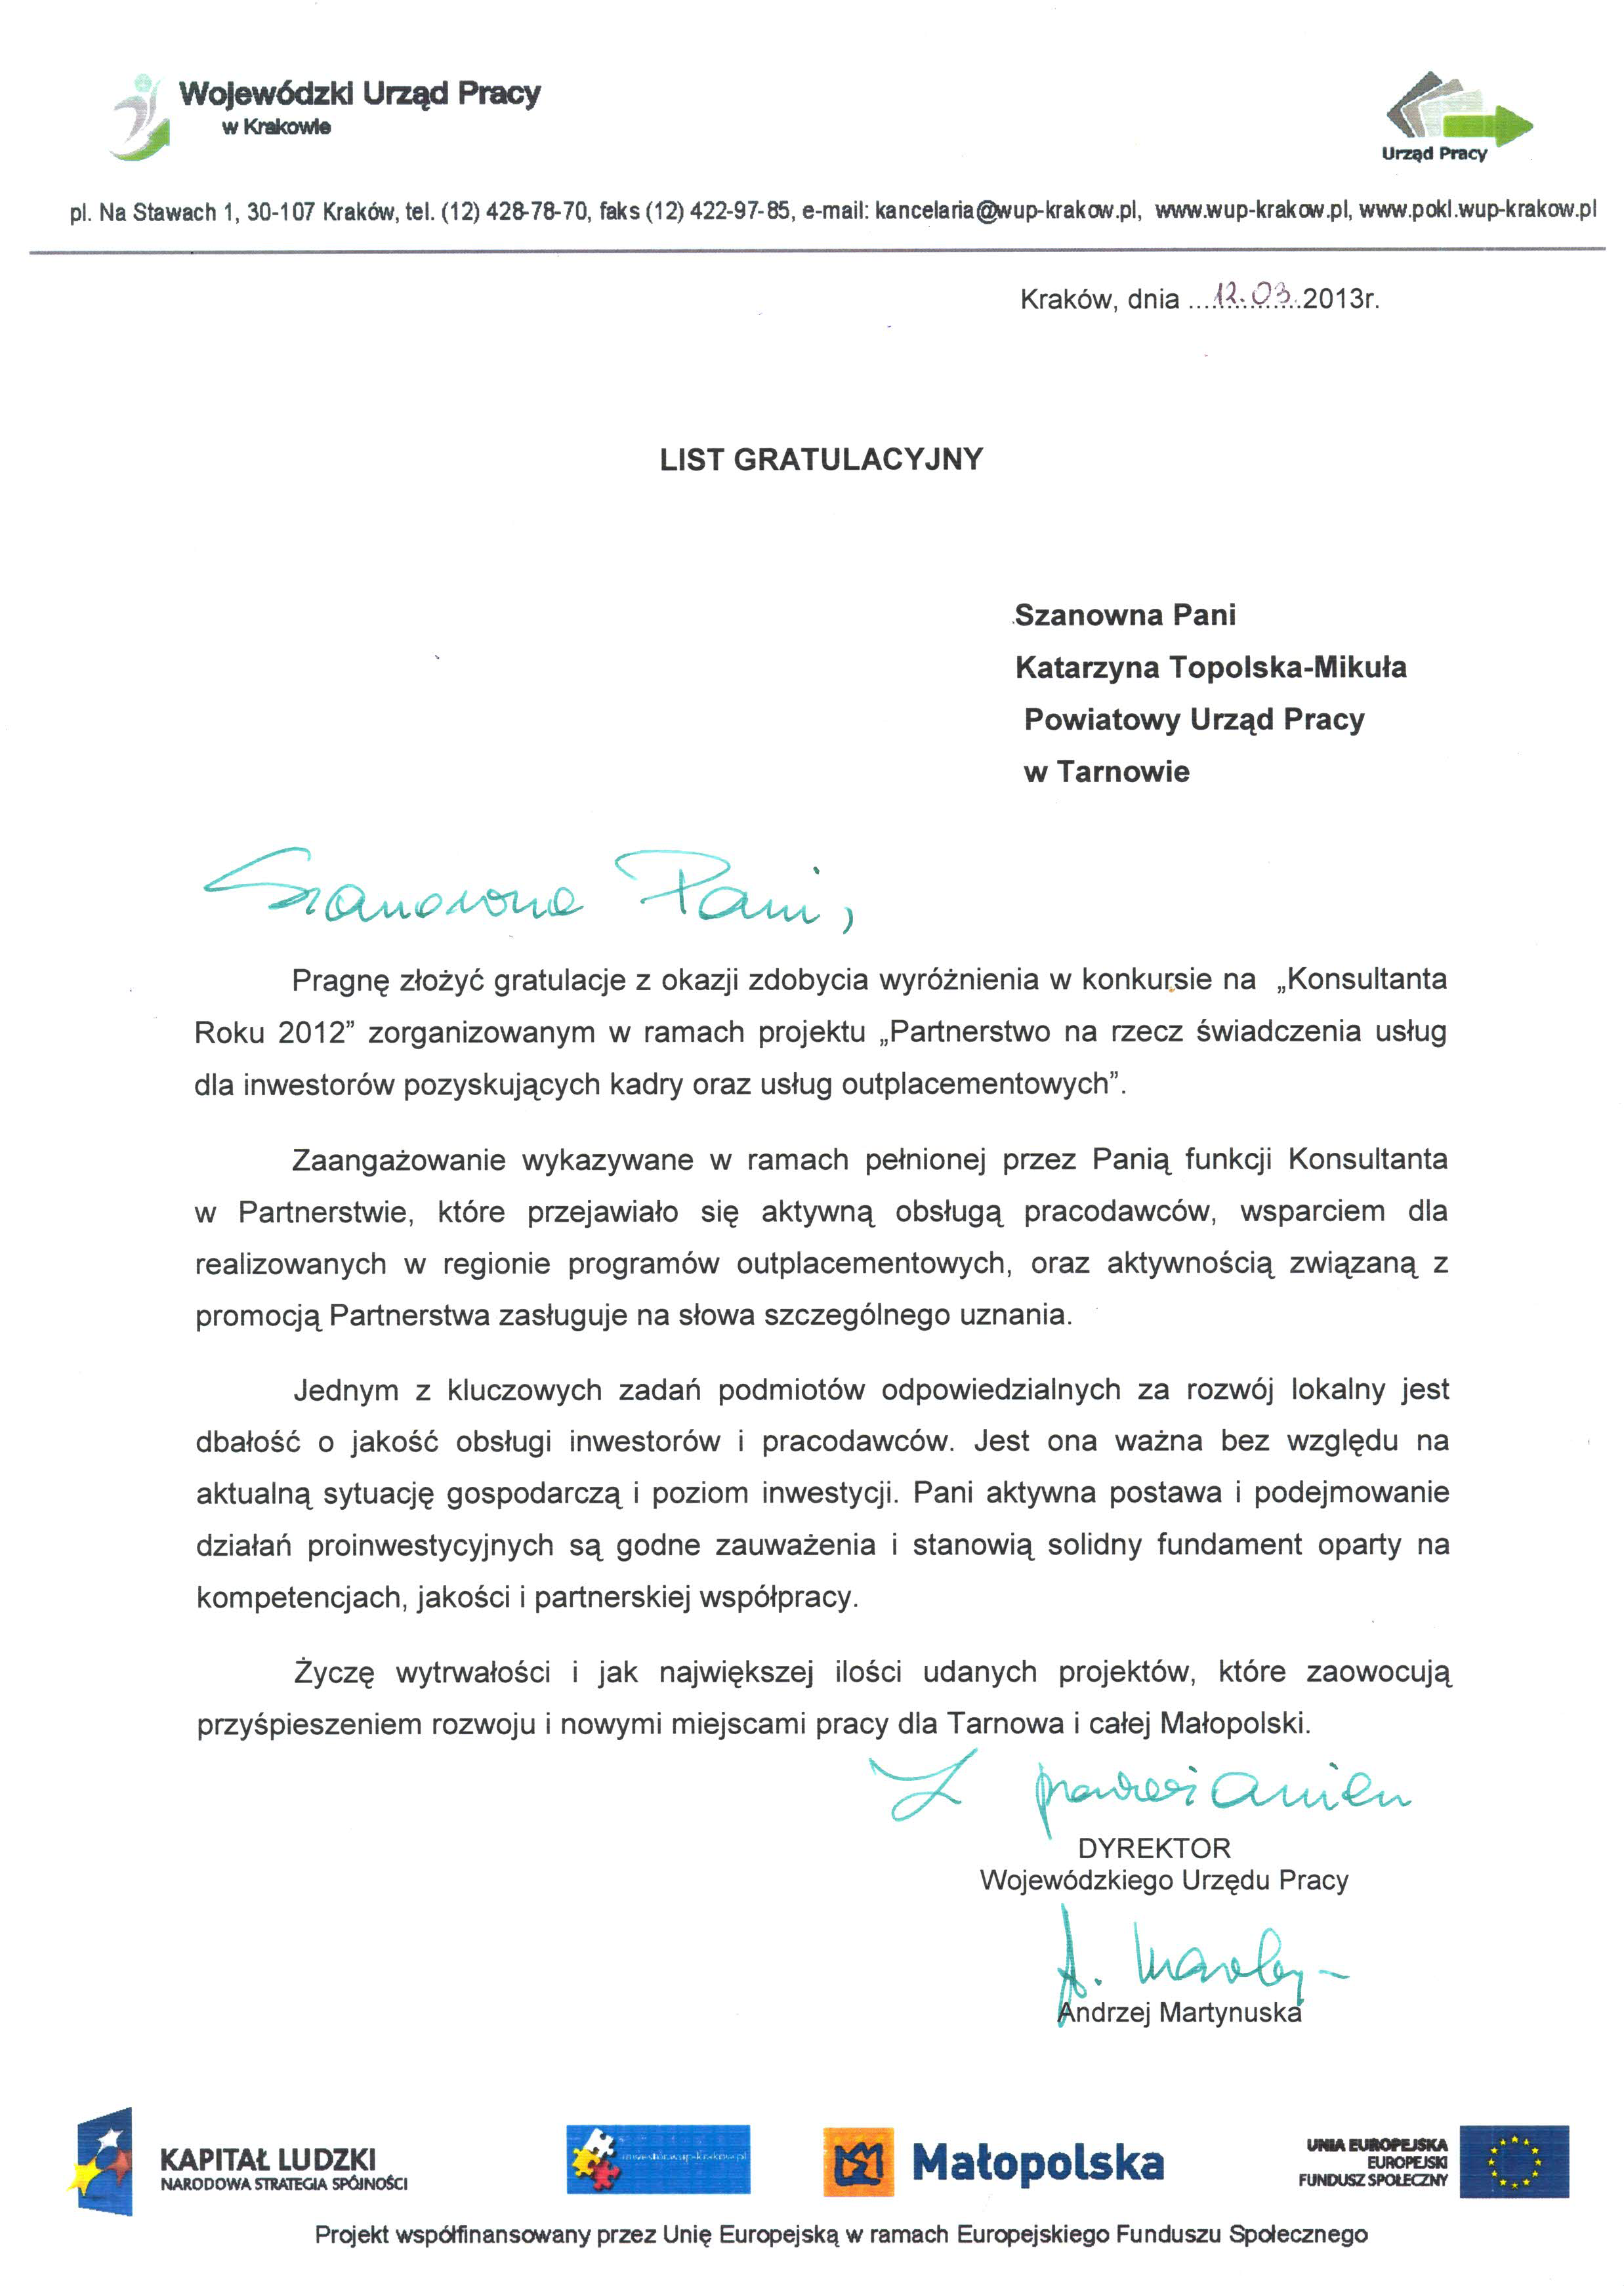 List gratulacyjny dla Katarzyny Topolska-Mikula za zdobycie wyróżnienia w ramach projektu Partnerstwa na rzecz świadczenia usług dla inwestorów poszukujących kadry oraz usług outplacementowych od WUP Kraków